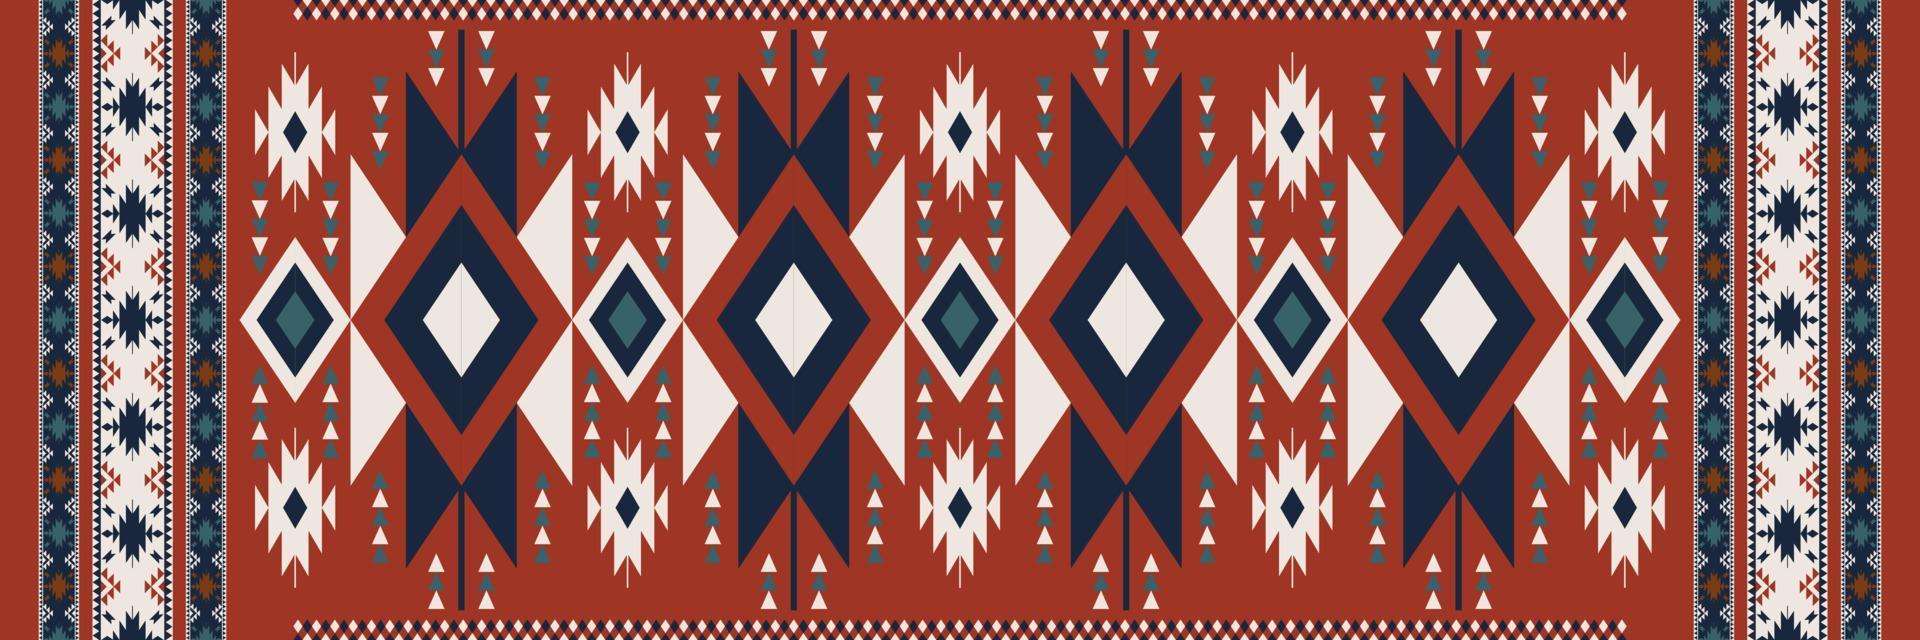 aztec navajo mönster. etnisk boho geometrisk mönster. etnisk stam- sydväst mönster använda sig av för matta, område mattor, gobeläng, matta, säng löpare, bordsduk eller Hem interiör dekoration element. vektor